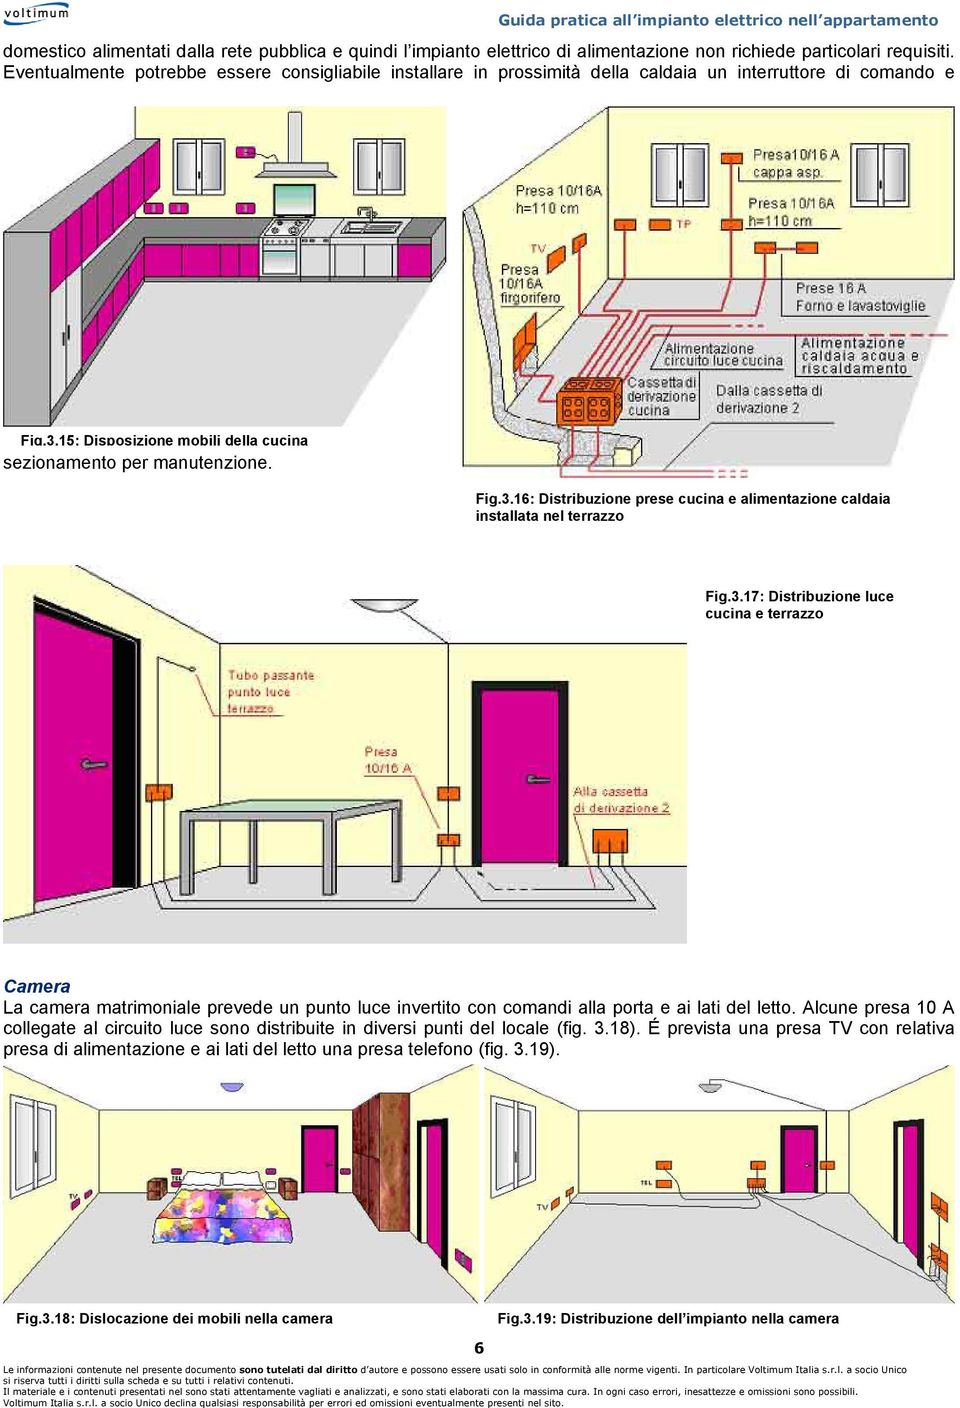 15: Disposizione mobili della cucina sezionamento per manutenzione. Fig.3.